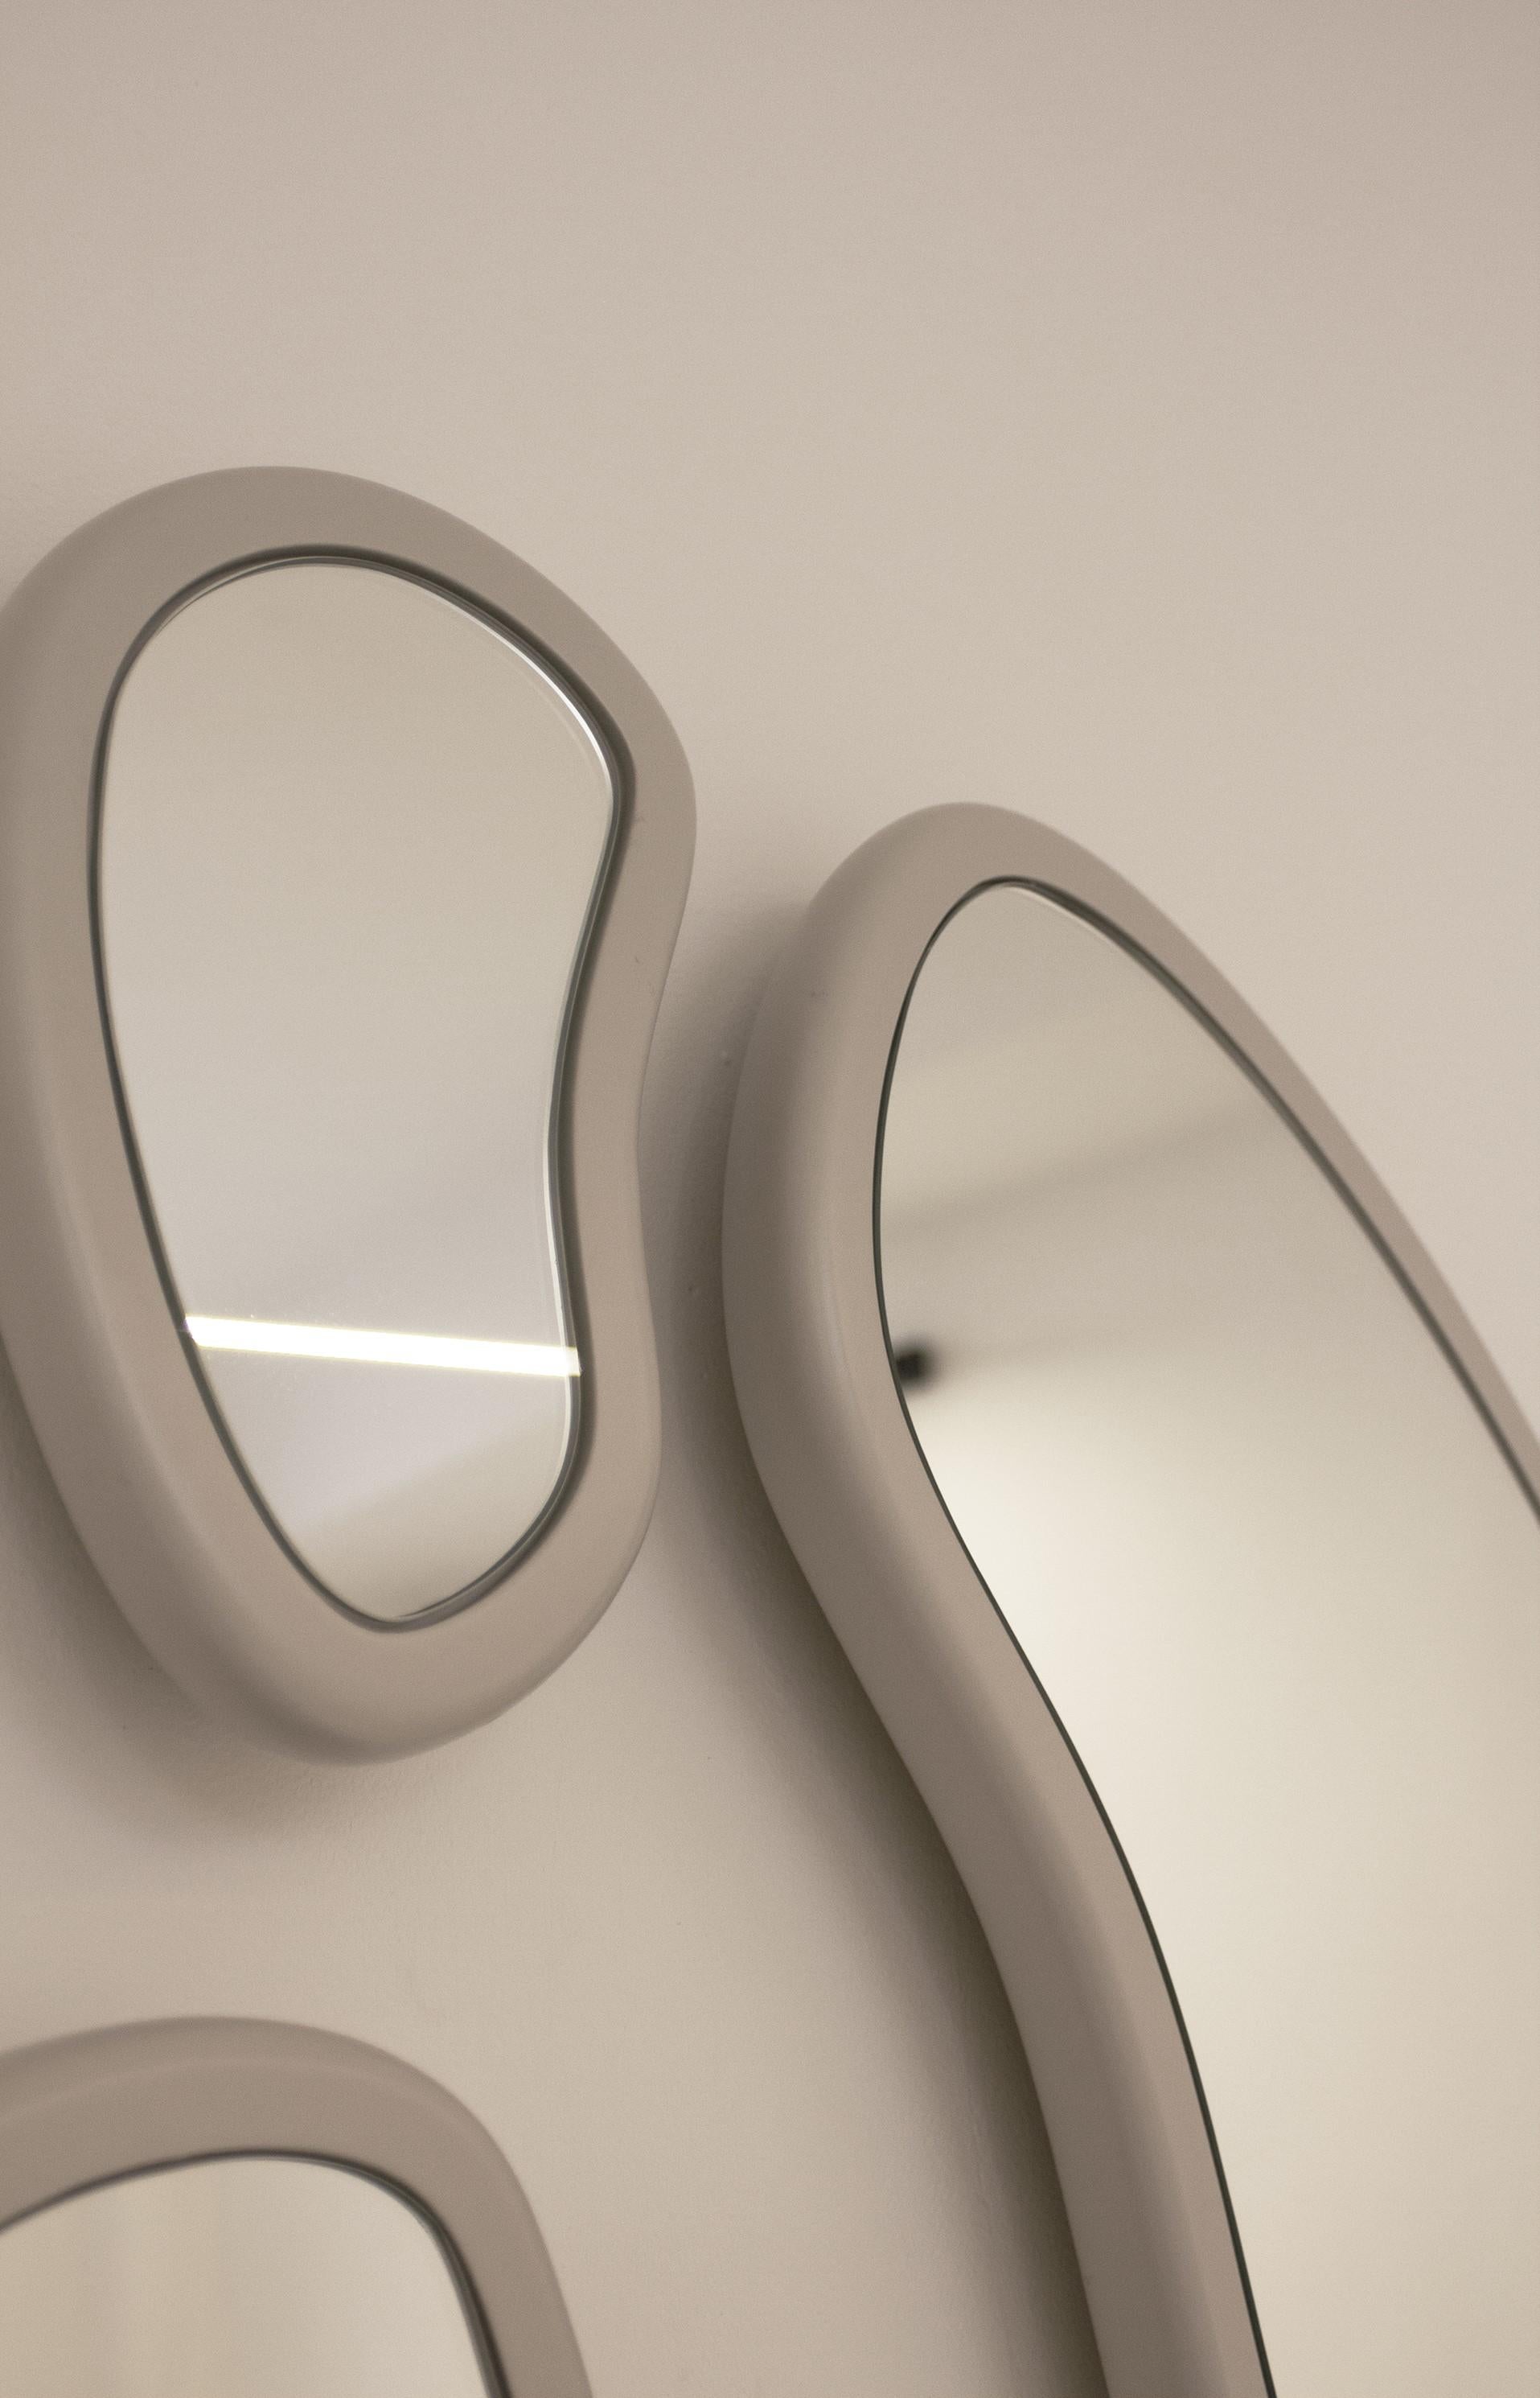 Les miroirs Laghi s'inspirent des différentes compositions réalisées par l'ensemble de tables basses Laghi. Grâce aux courbes internes et externes ainsi qu'aux différentes tailles de miroir, chaque composition peut être totalement unique. Les